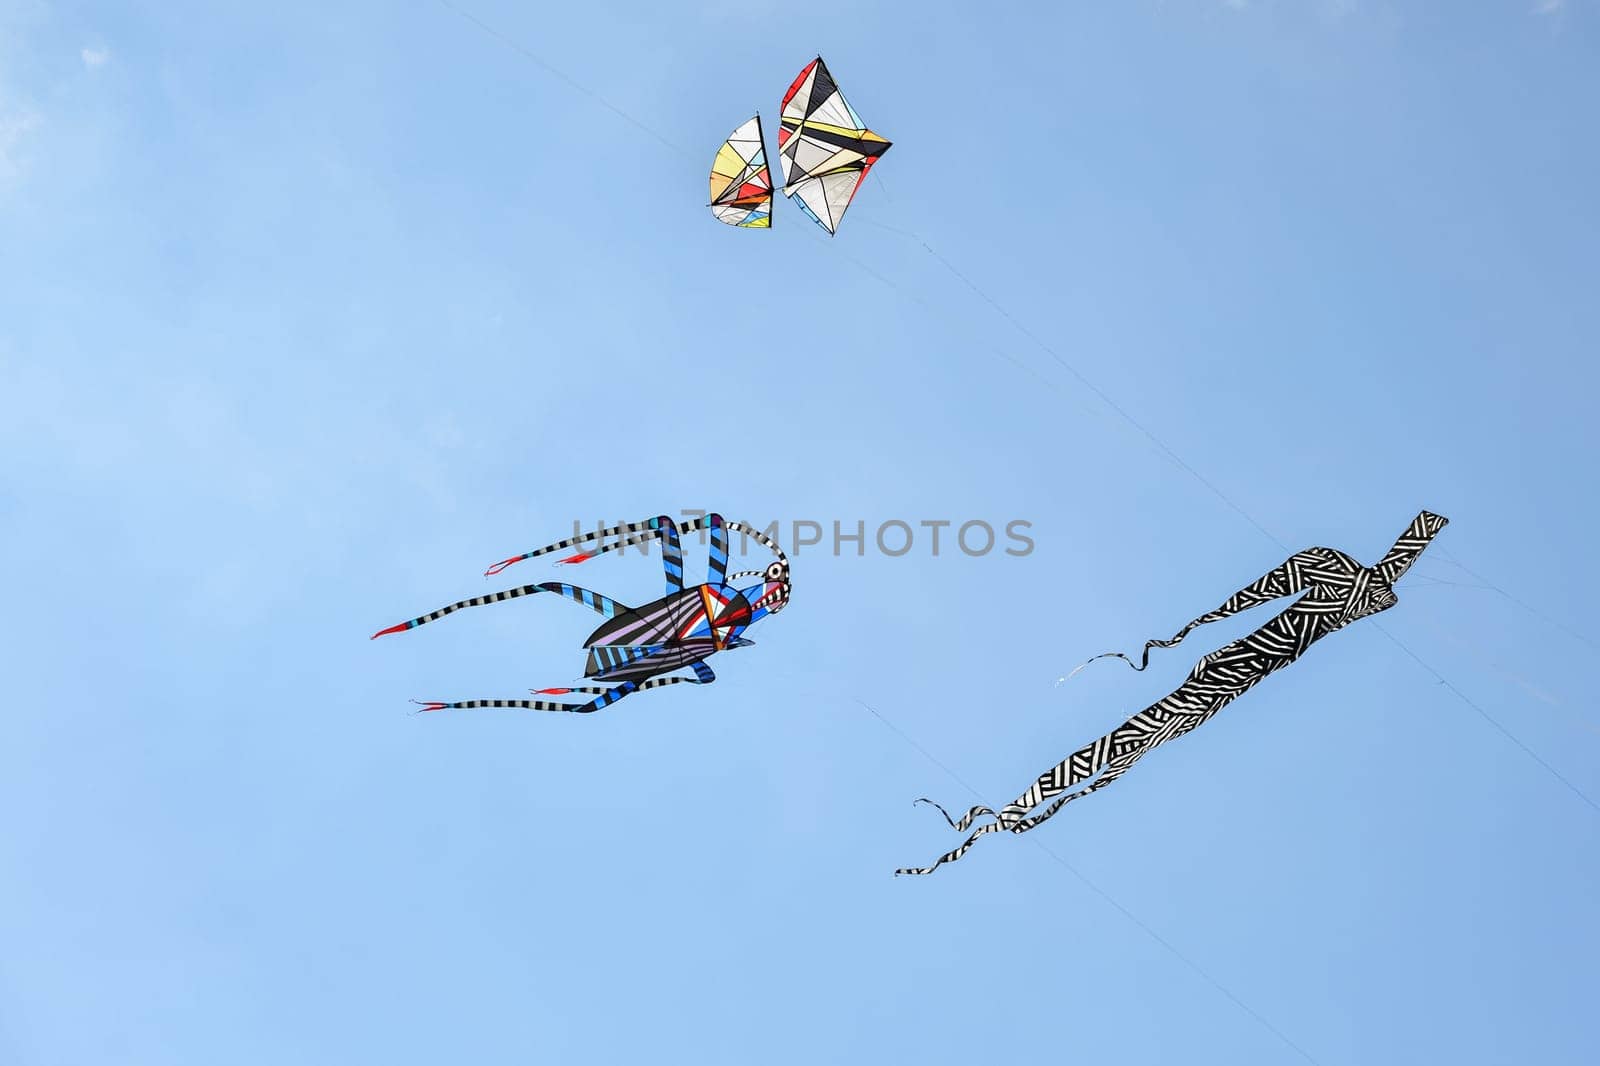 Kite festival. Kites in the sky in the Atlantic ocean